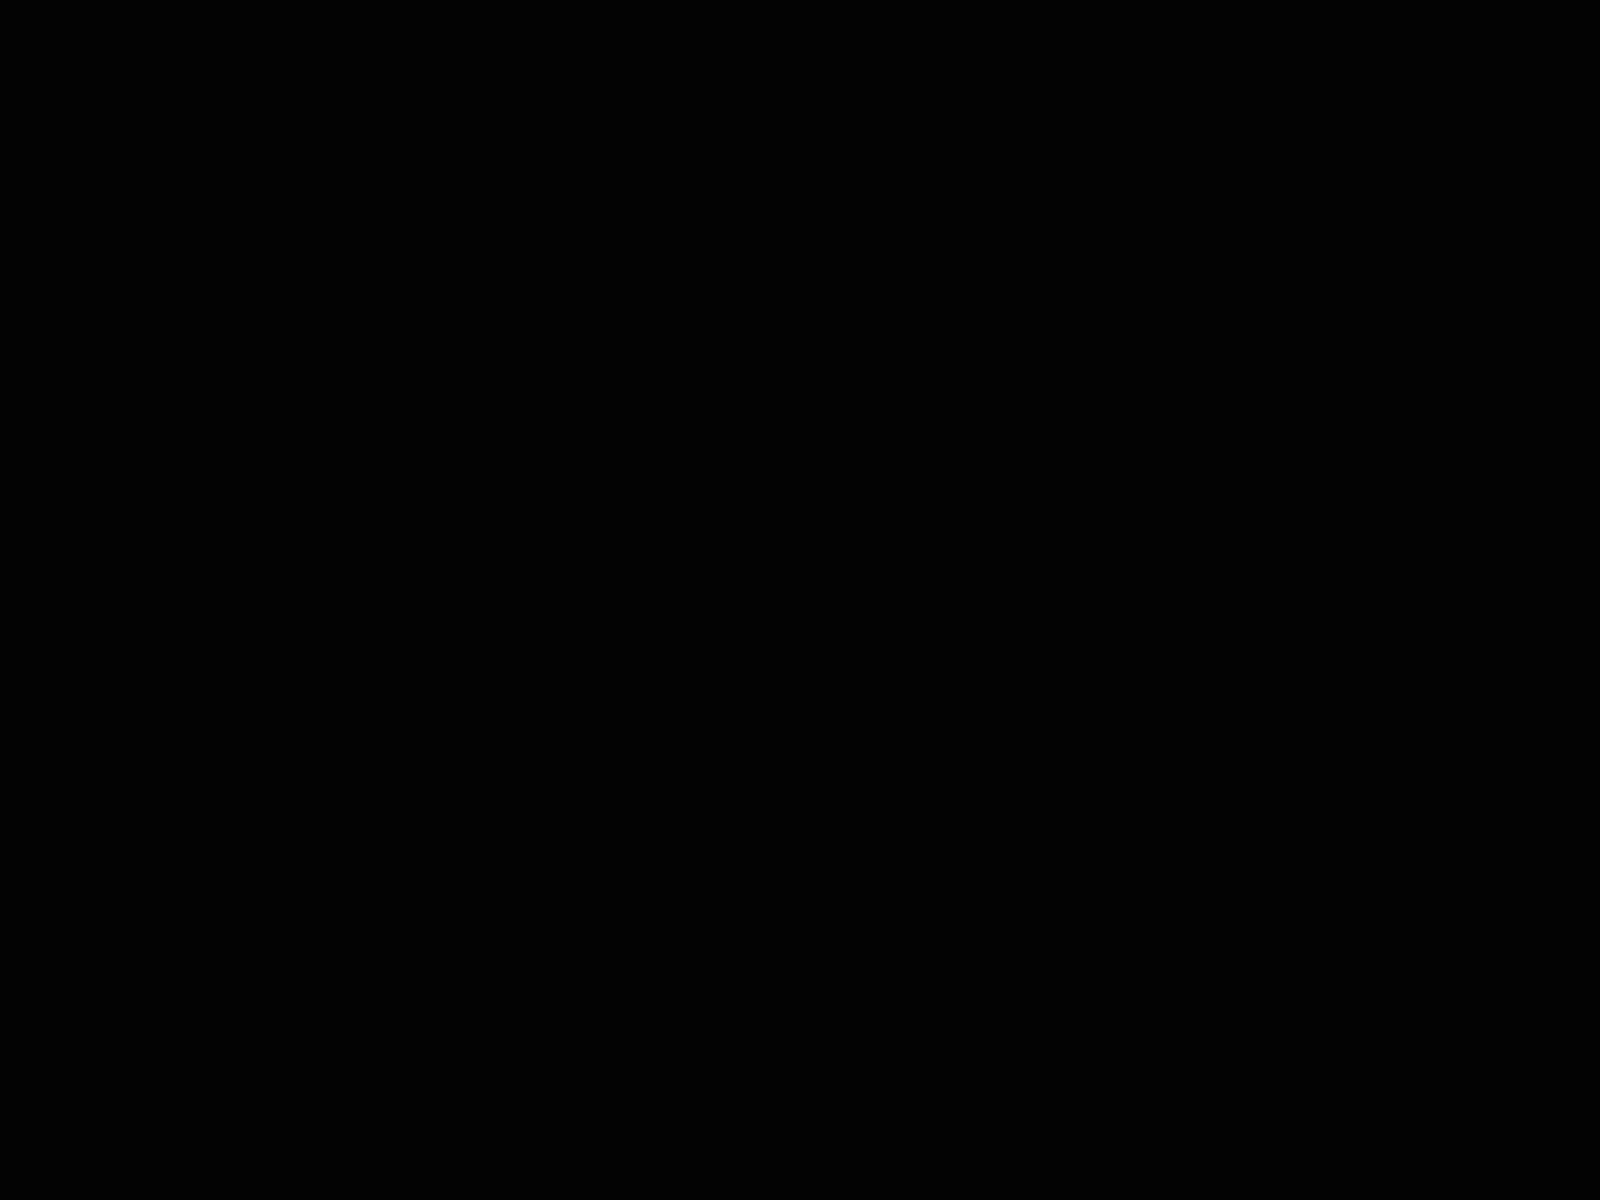 Otoklix logo animation